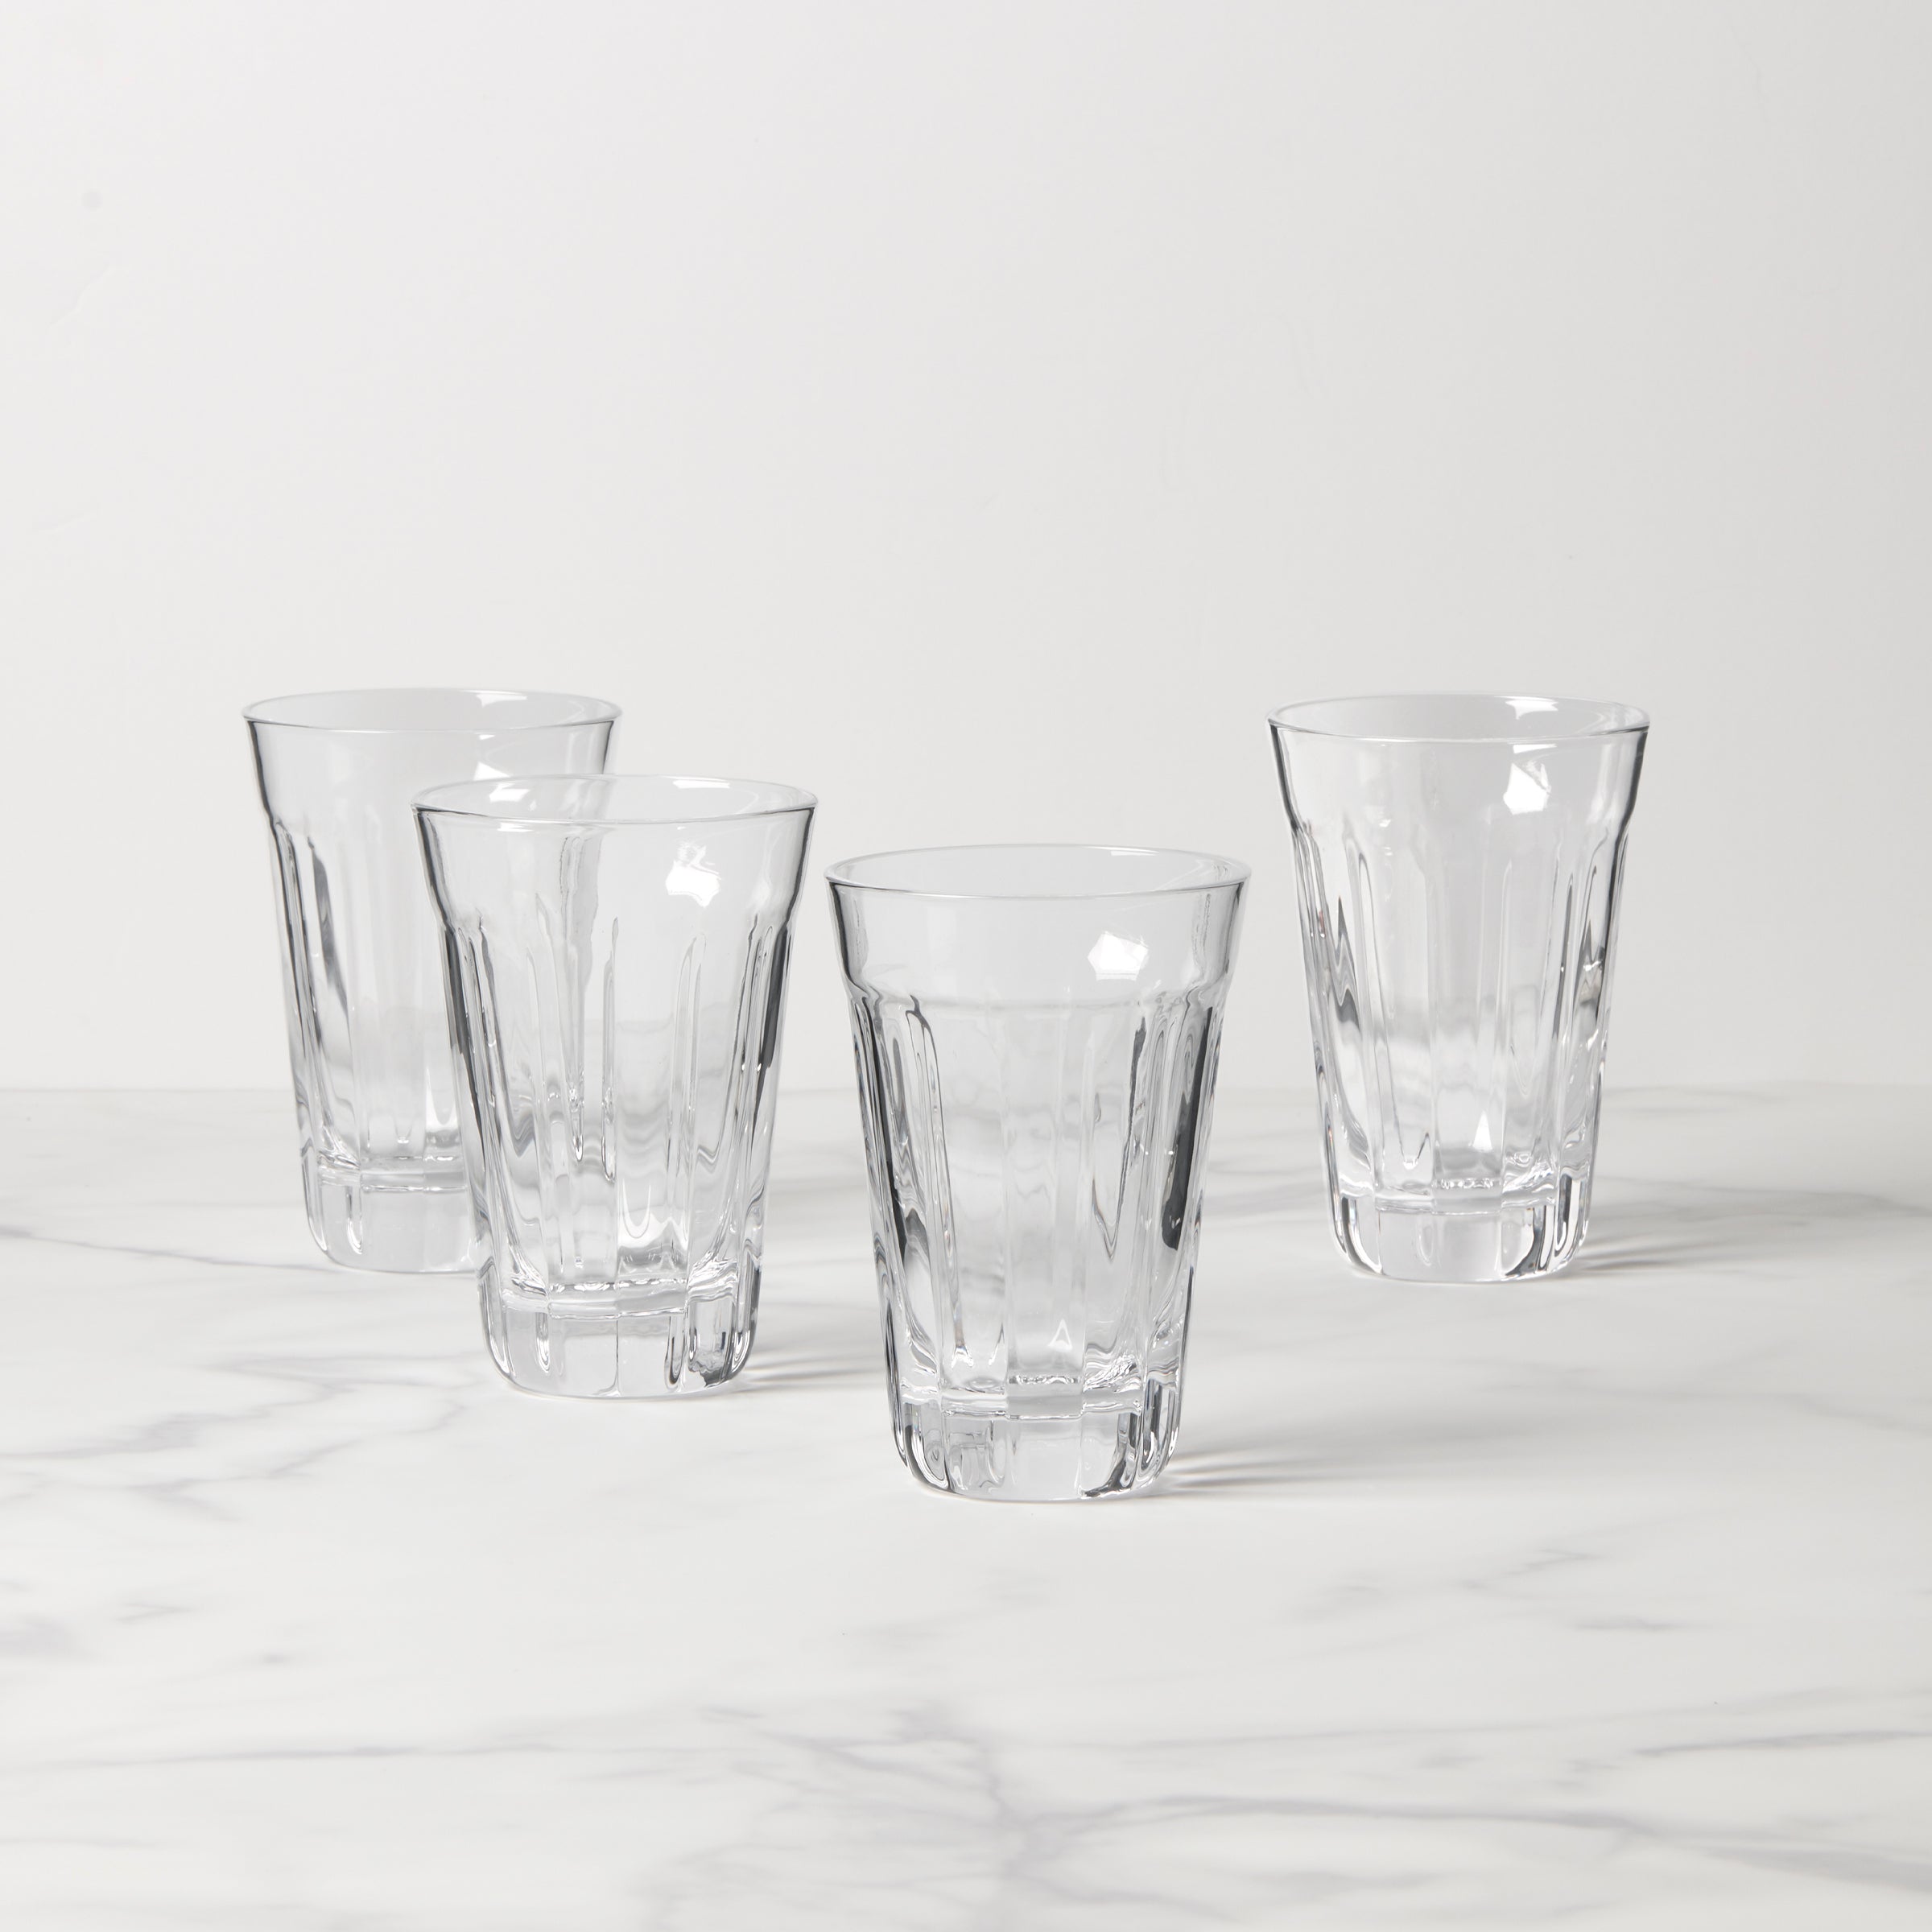 POKAL Snaps glass, clear glass, 2 oz - IKEA